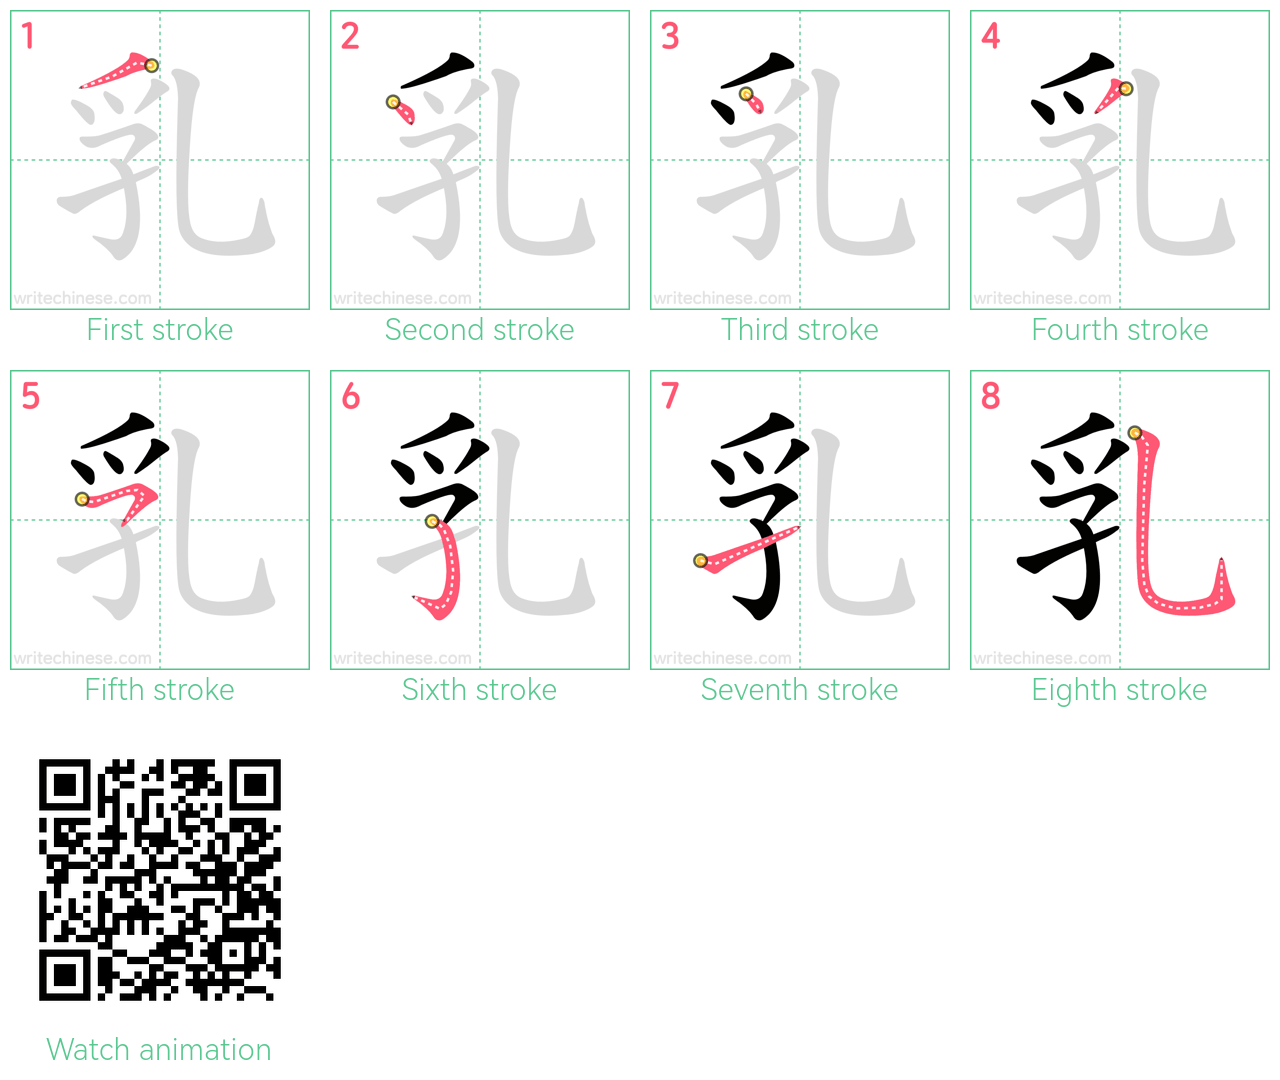 乳 step-by-step stroke order diagrams